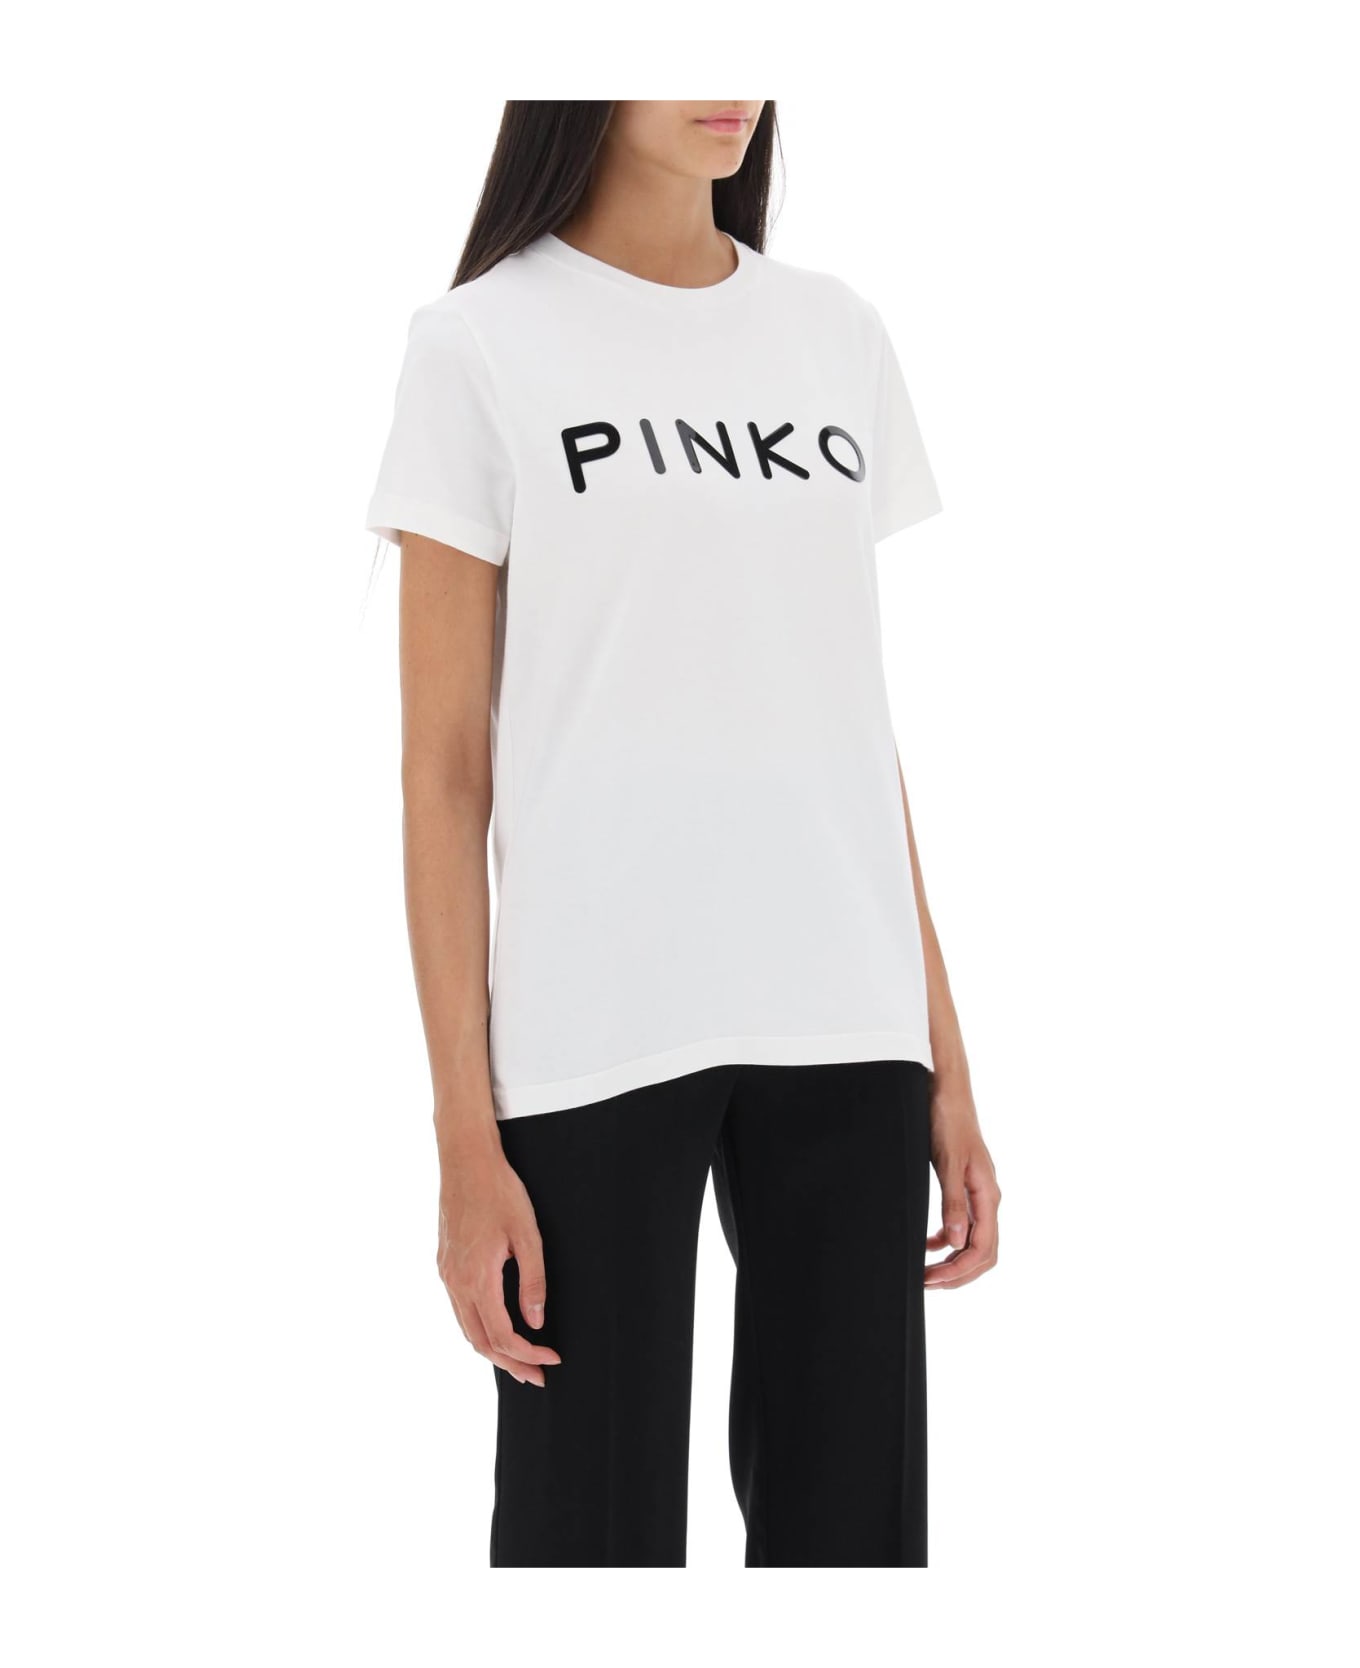 Pinko Cotton T-shirt With Logo - White